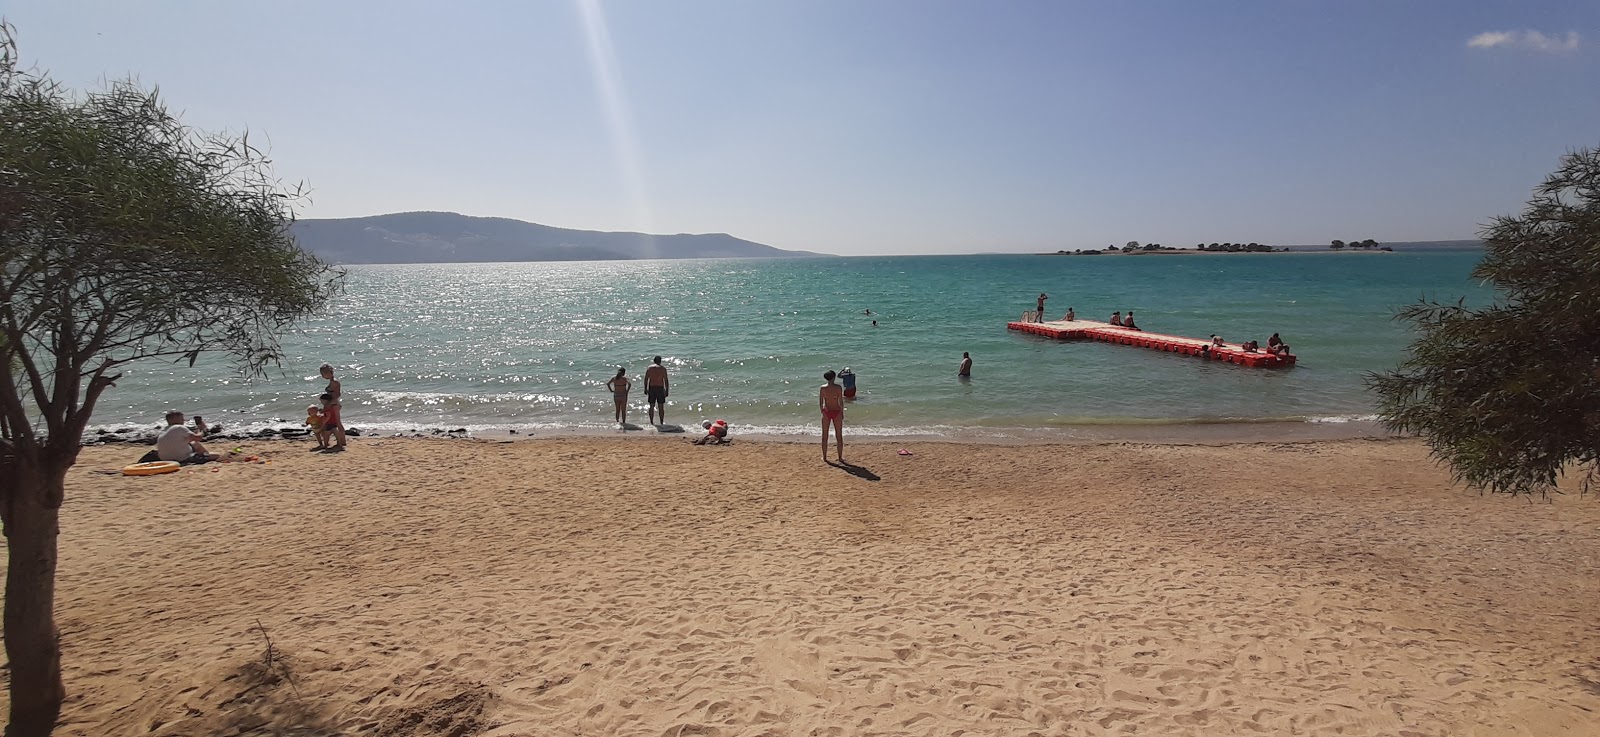 Fotografie cu Kerem beach II cu o suprafață de apa turcoaz